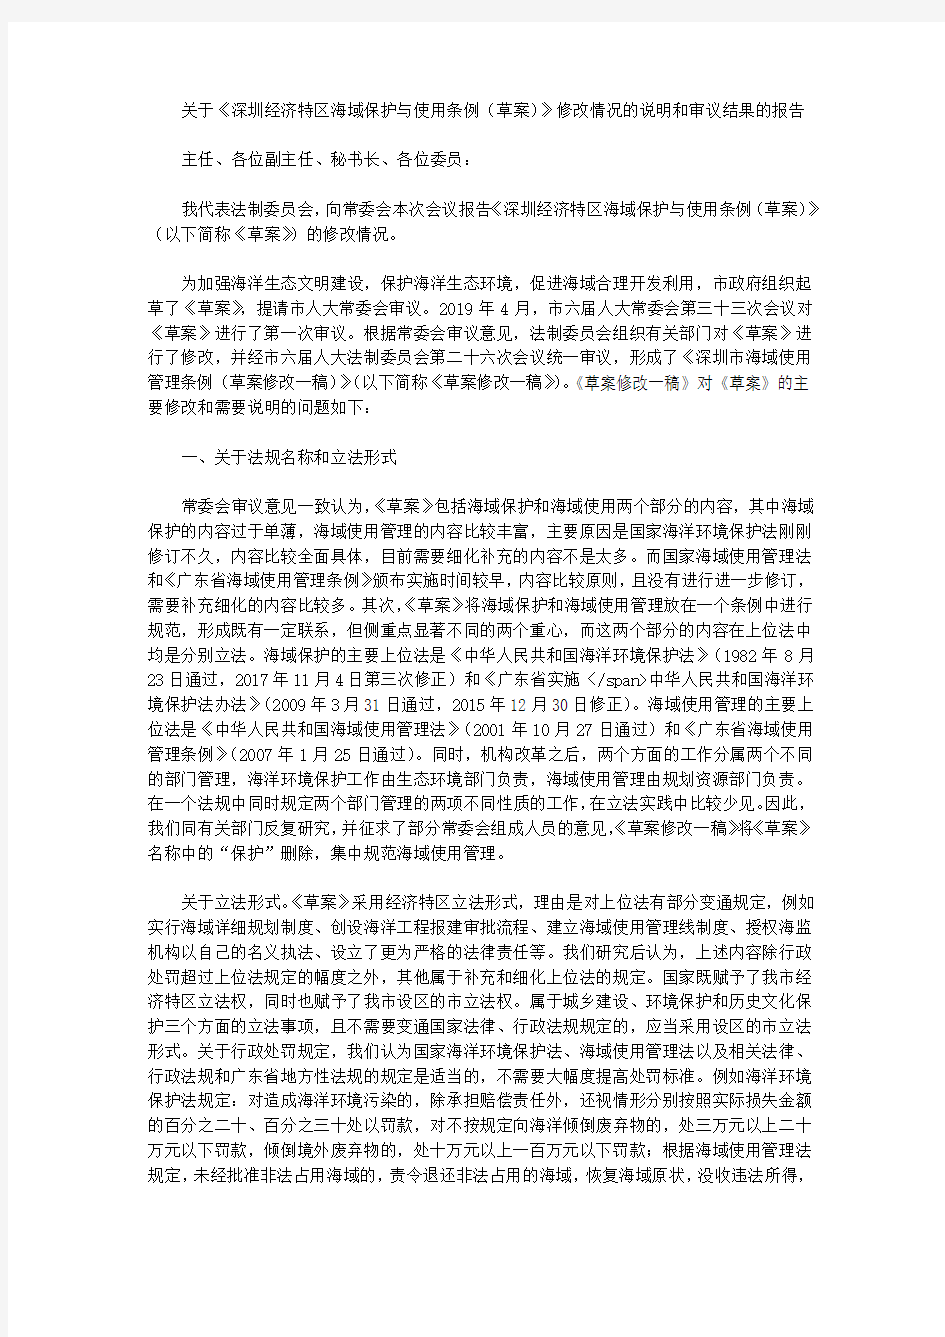 关于《深圳经济特区海域保护与使用条例(草案)》修改情况的说明和审议结果的报告